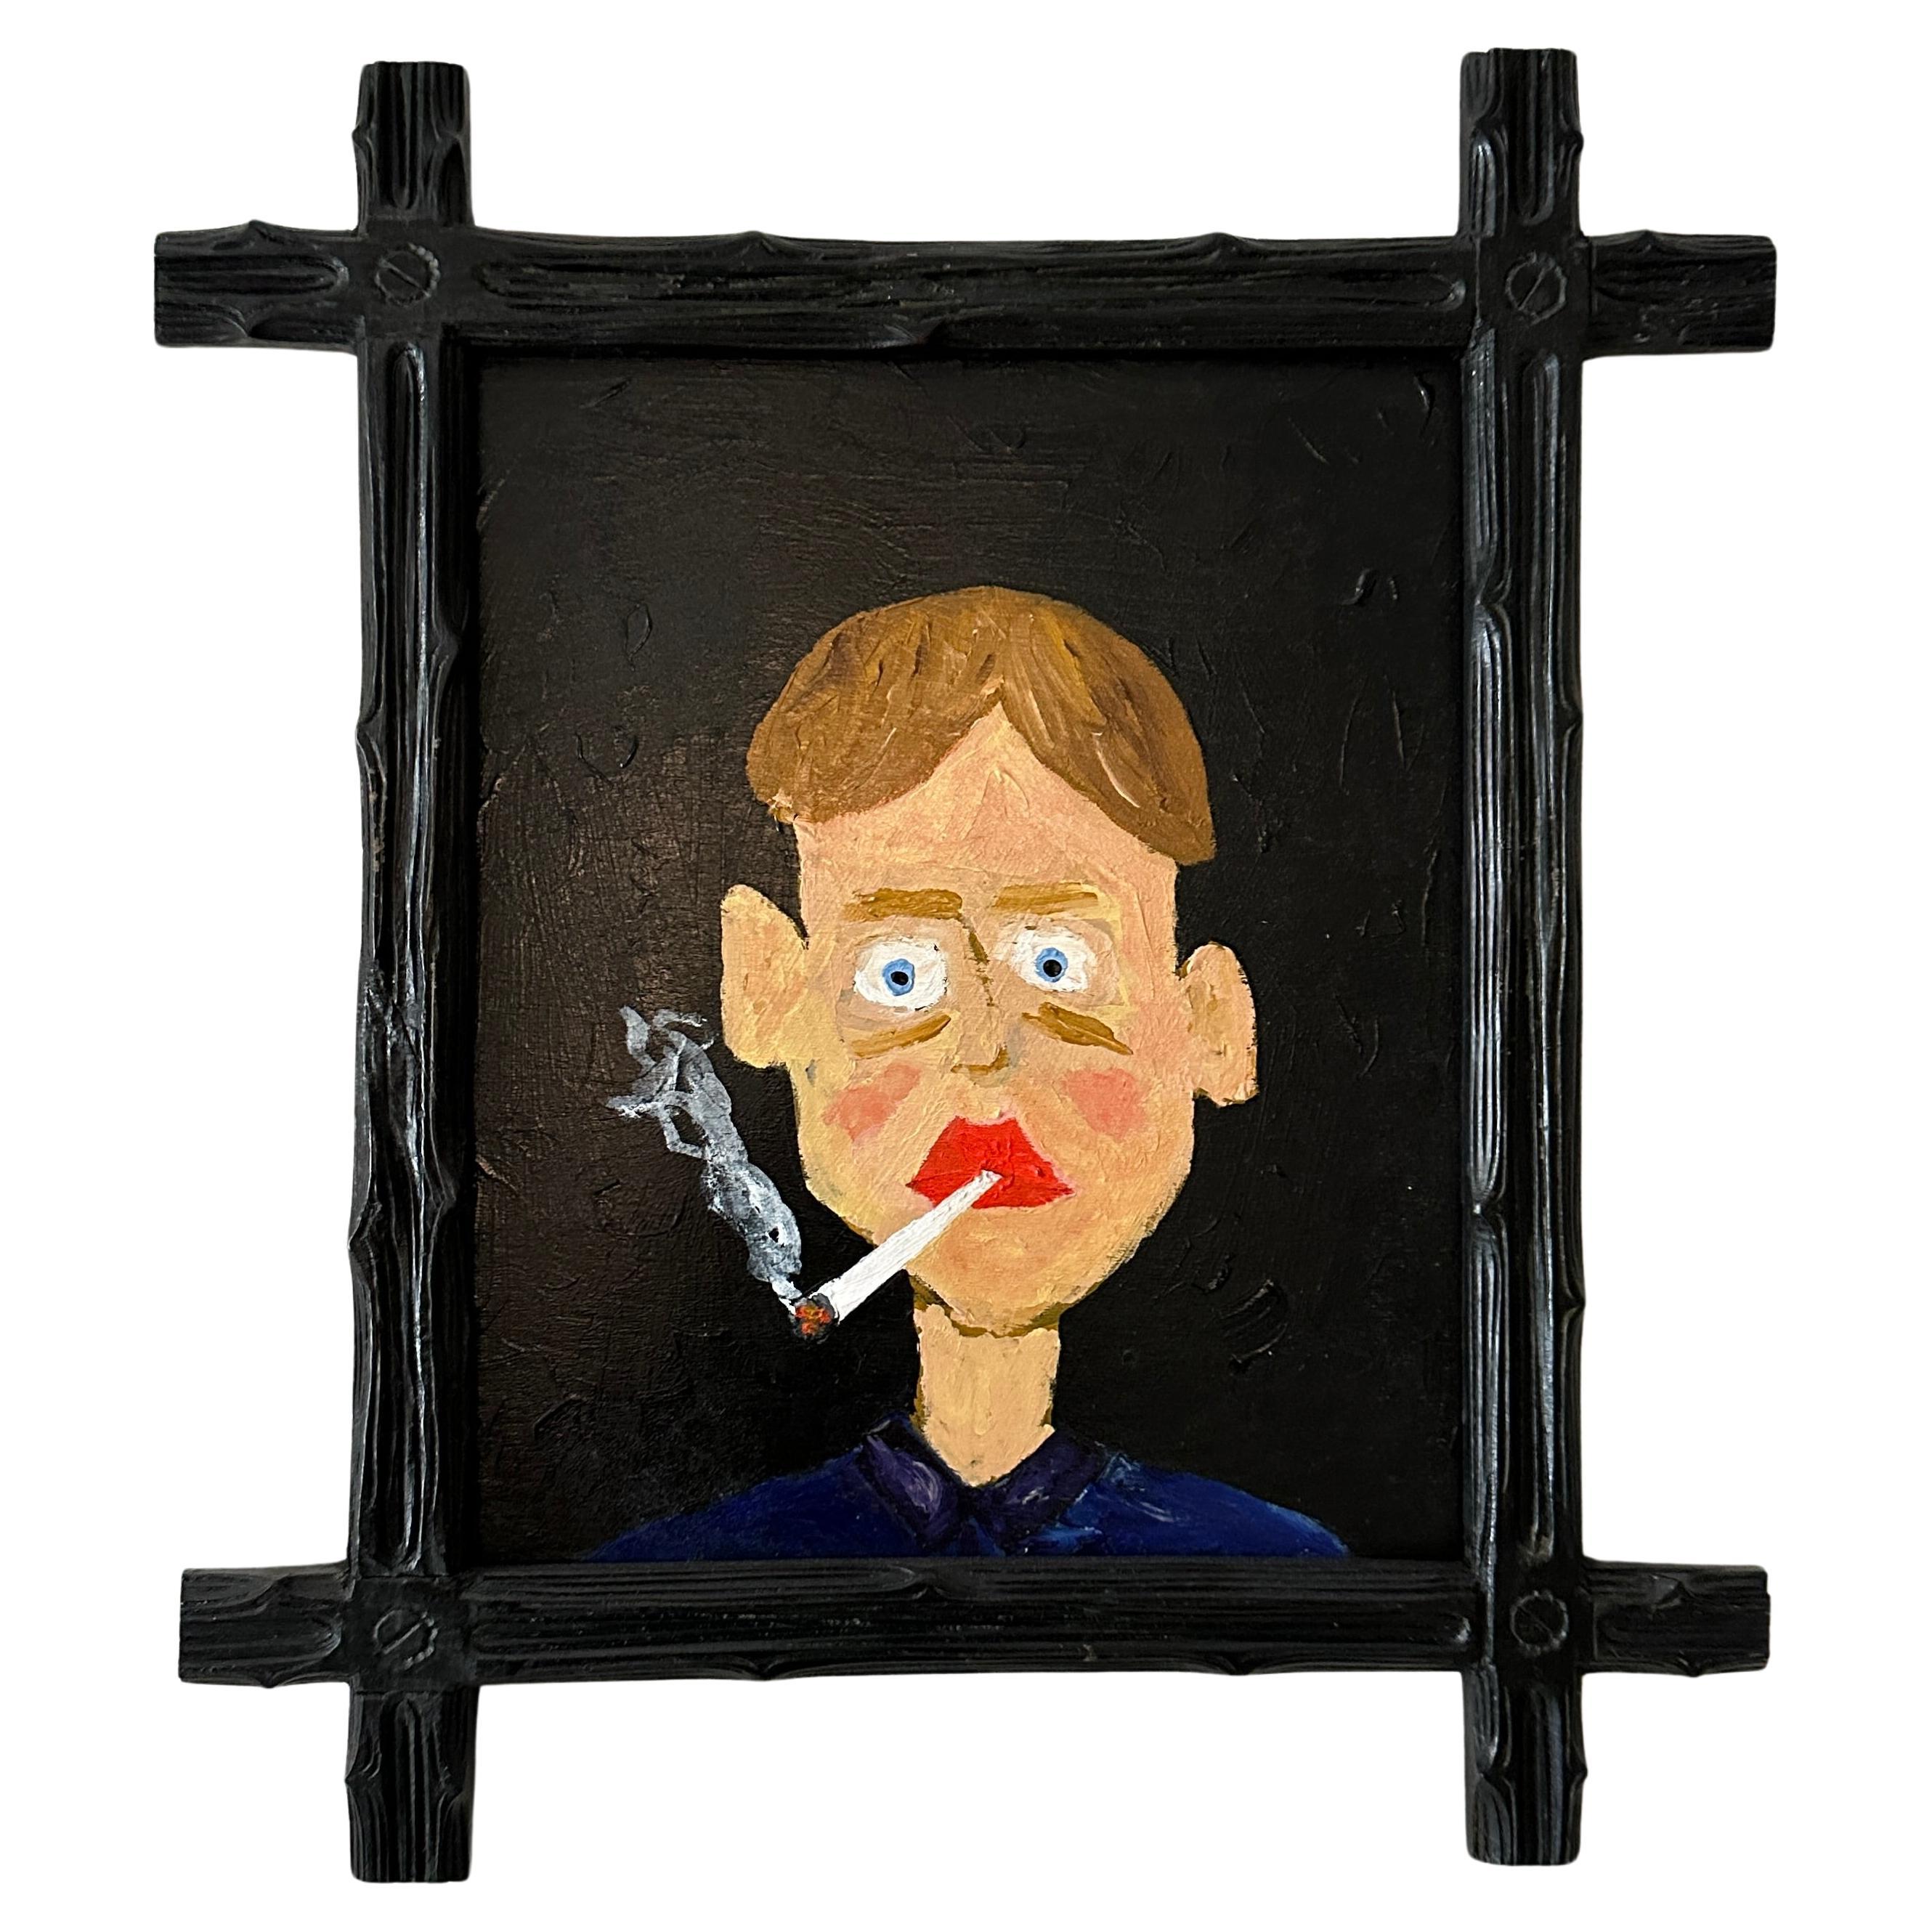 Zeitgenössische Porträtmalerei eines Mannes in mehrfarbiger Acrylfarbe auf Holz